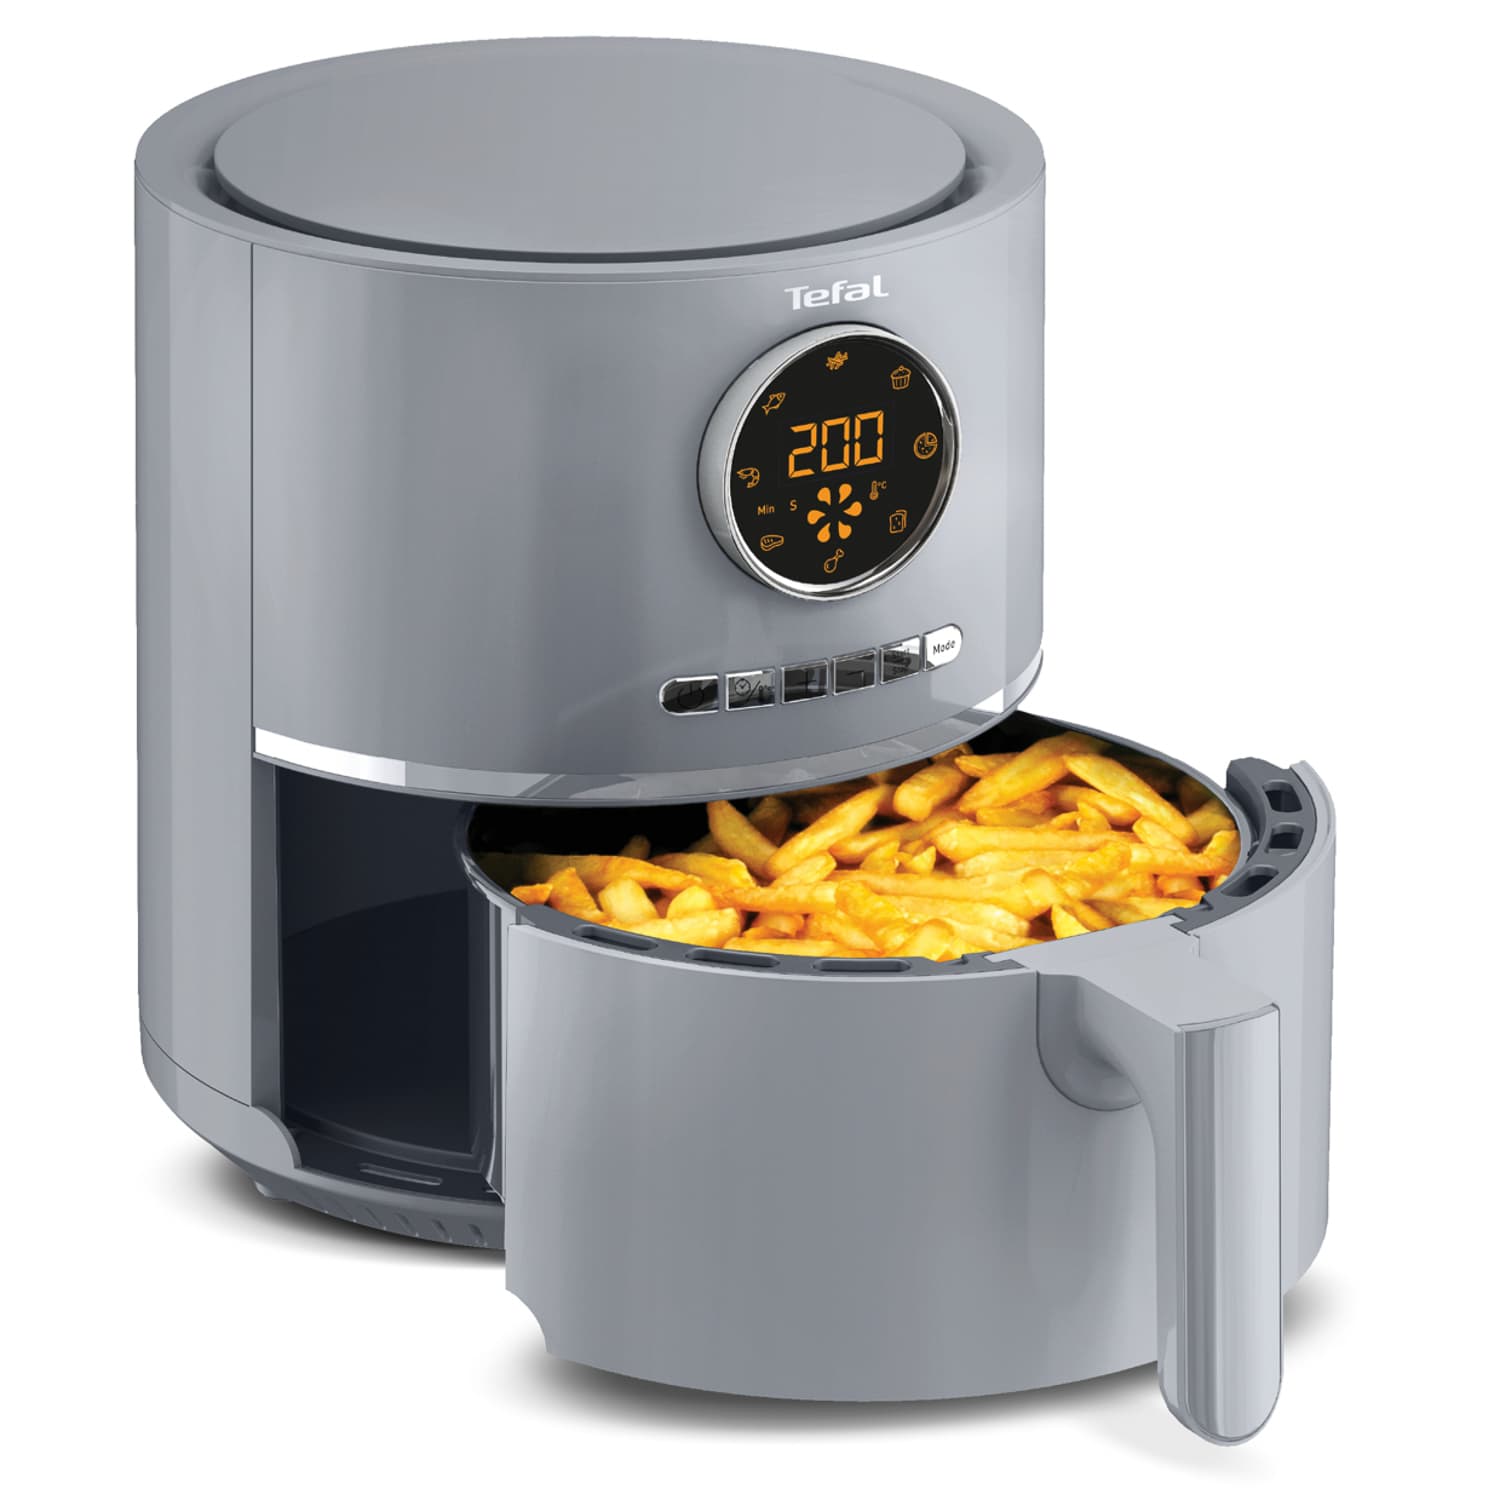 Tefal Ultra Air Fryer 4.2L - Grey, Kitchen